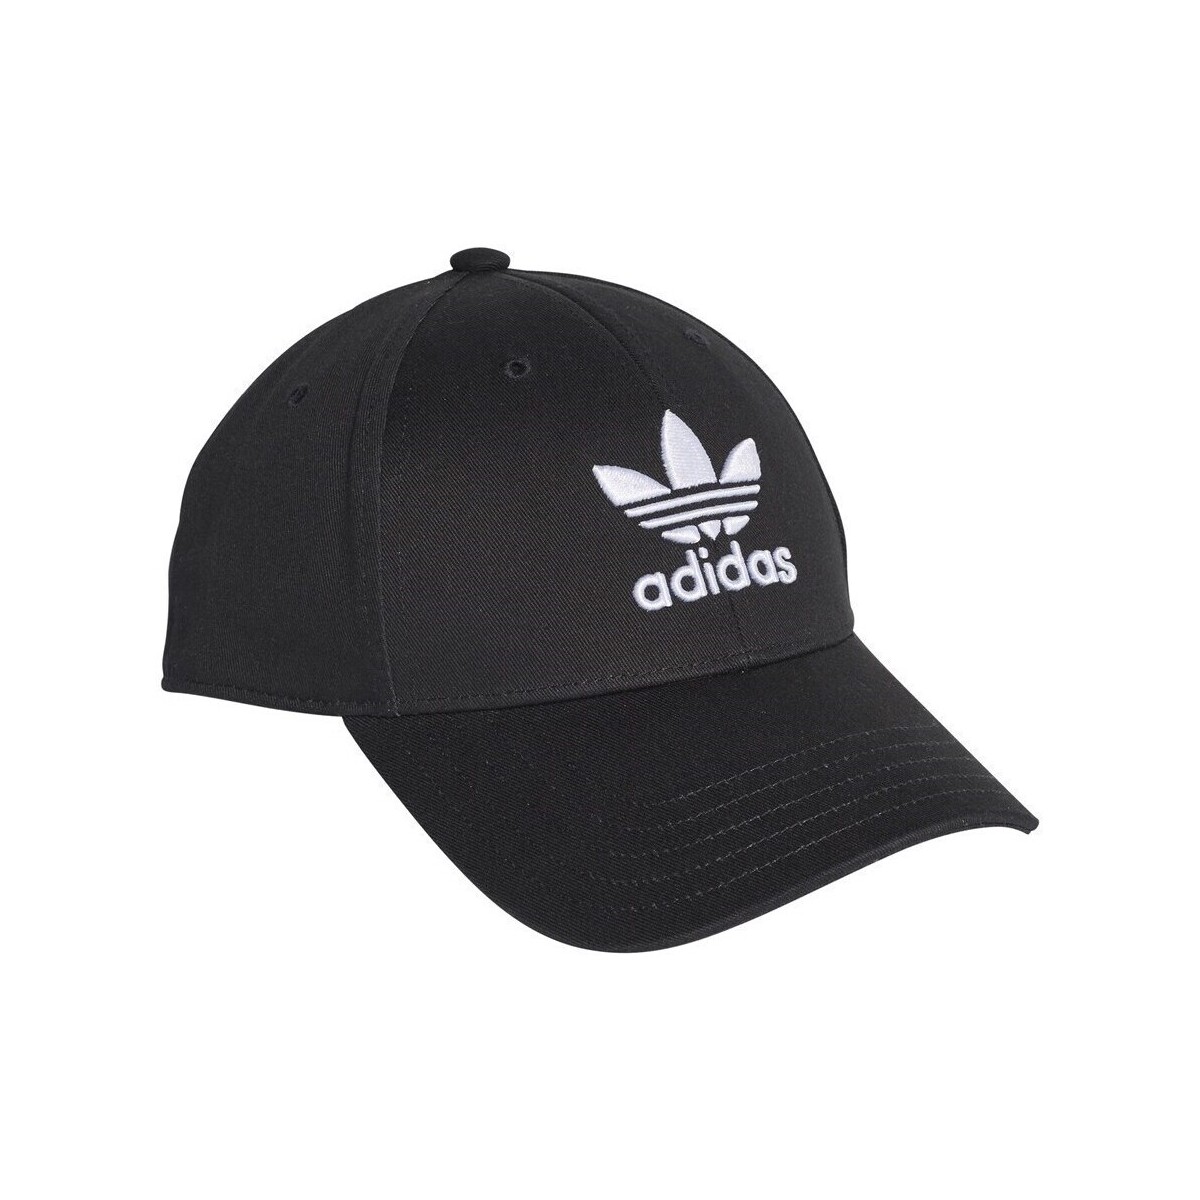 Clothes accessories Caps adidas Originals Baseball Class Trefoil Cap Black